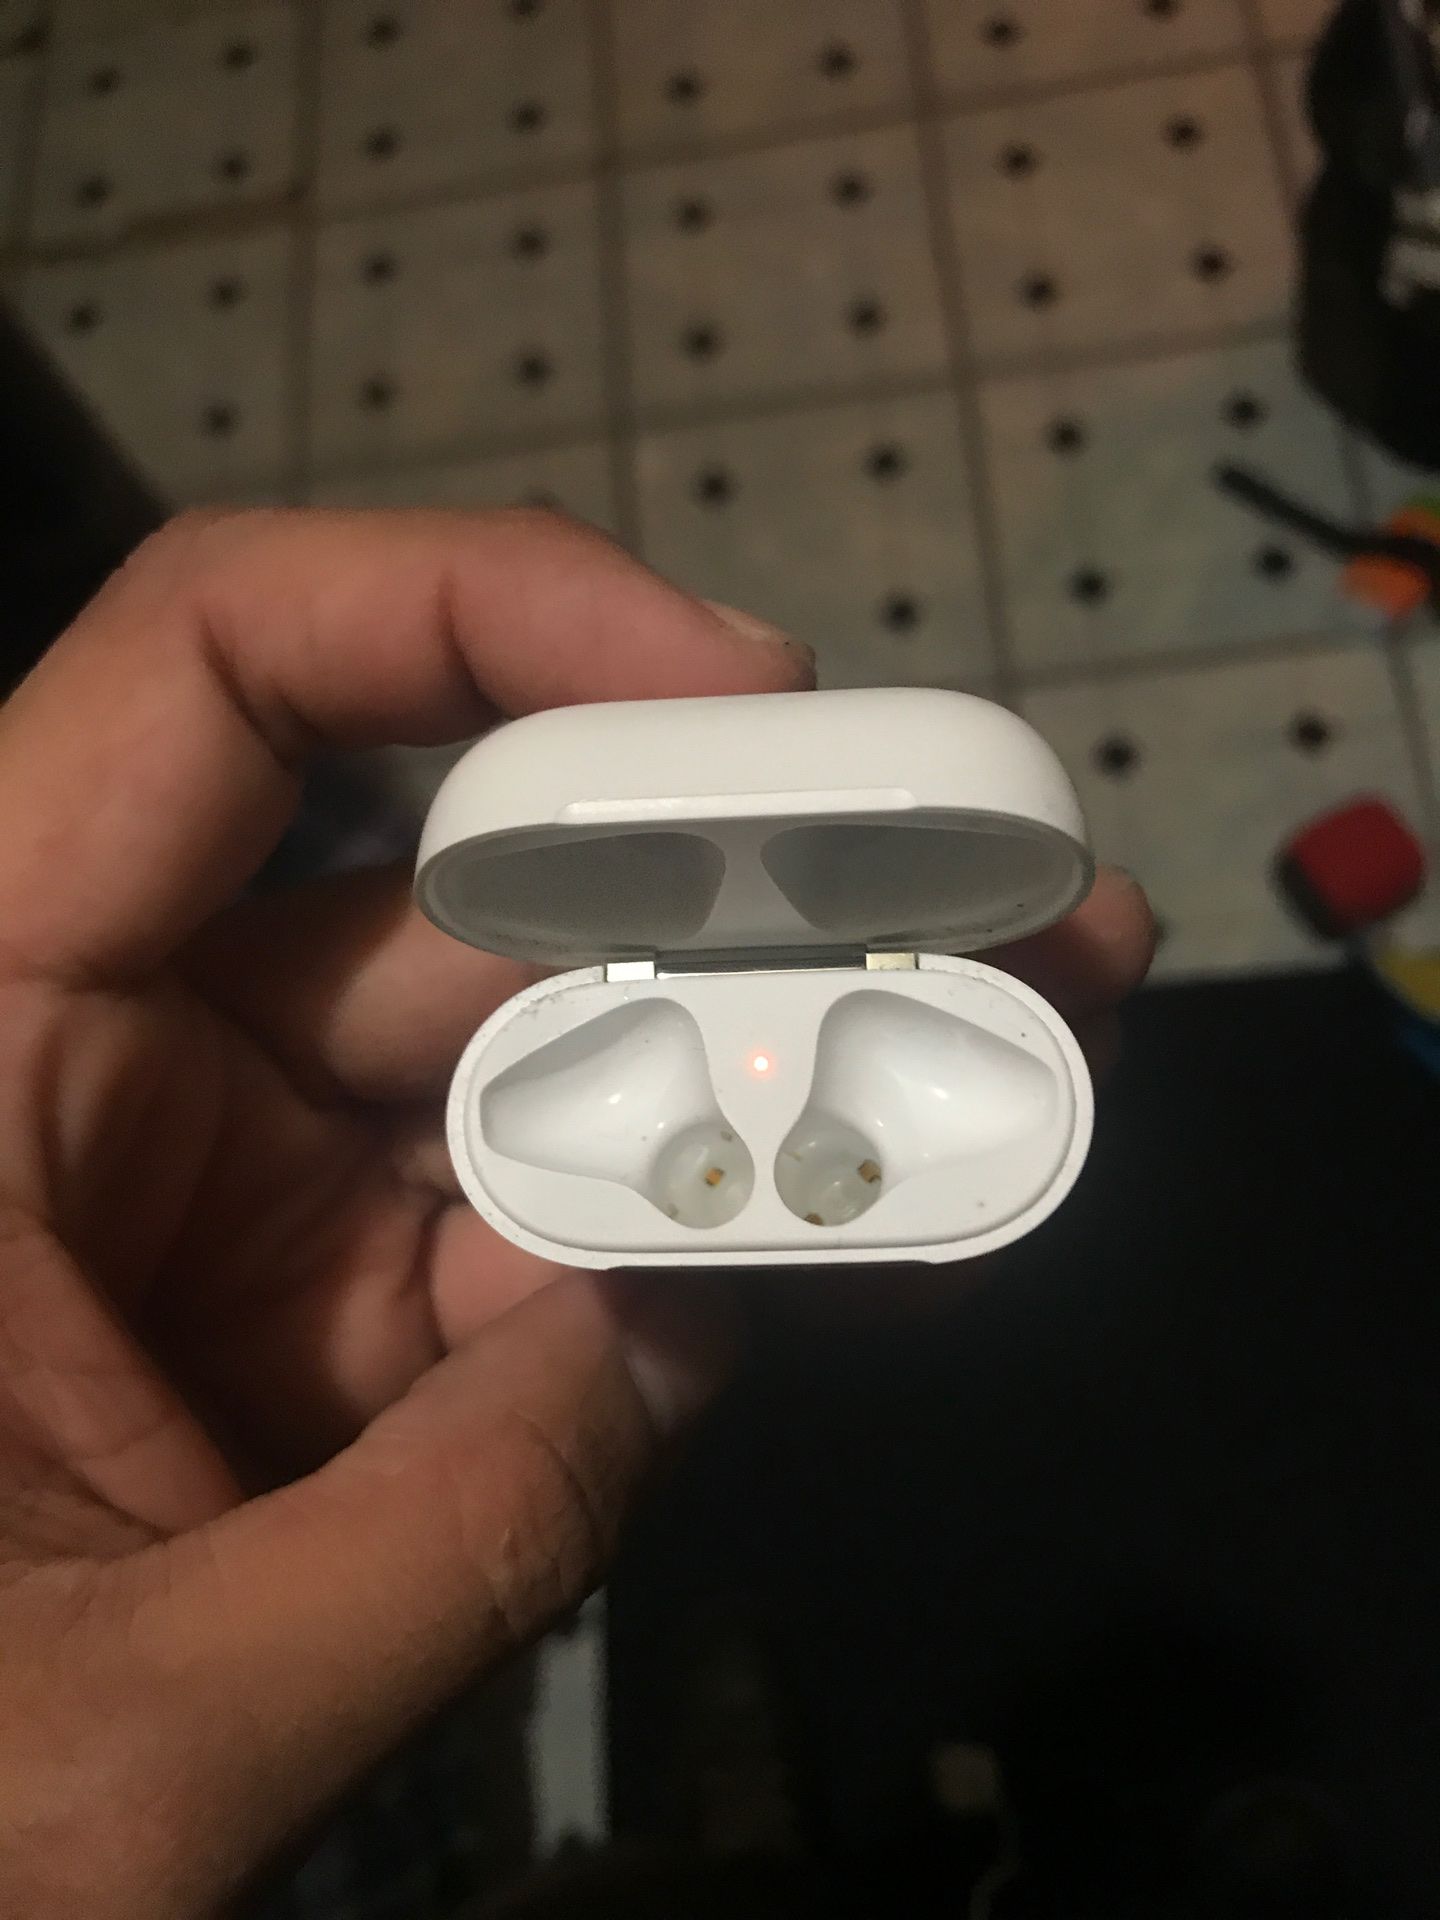 Apple EarPods charger no headphones